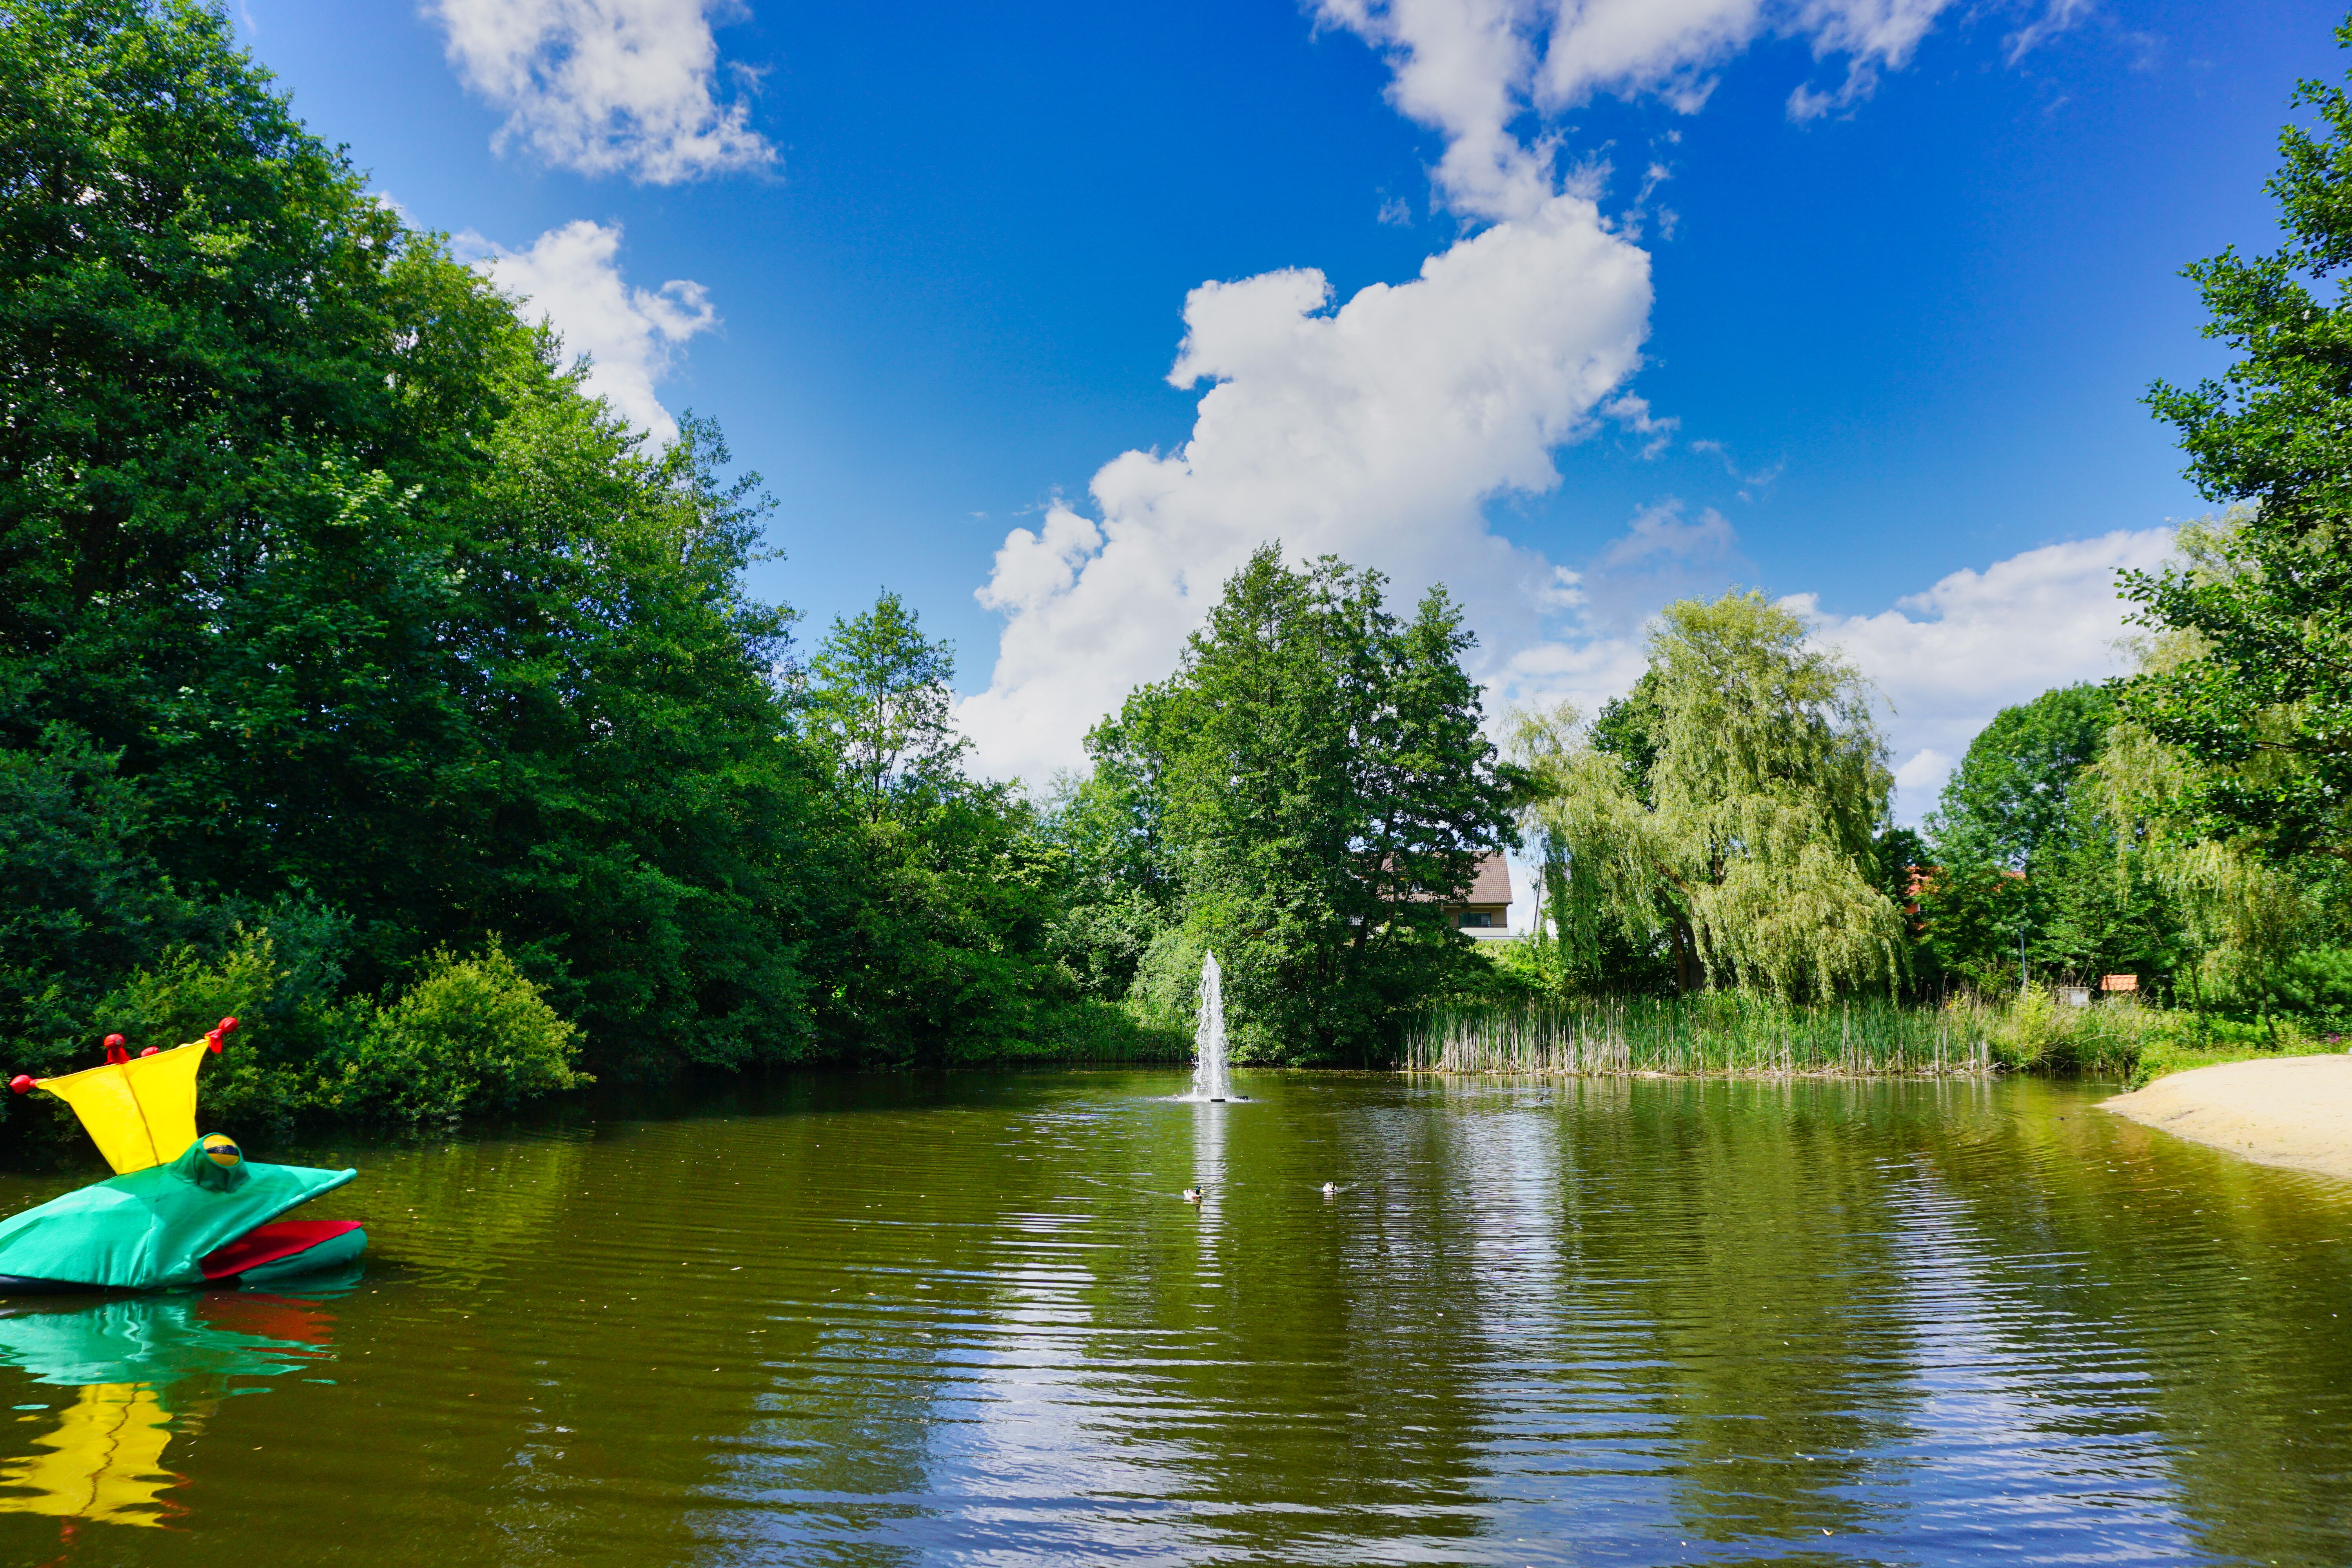 Der Bürgerpark von Steinhagen mit seinem kleinen Sandstrand, Teich mit Fischbesatz und kleinem Wasserspiel.
